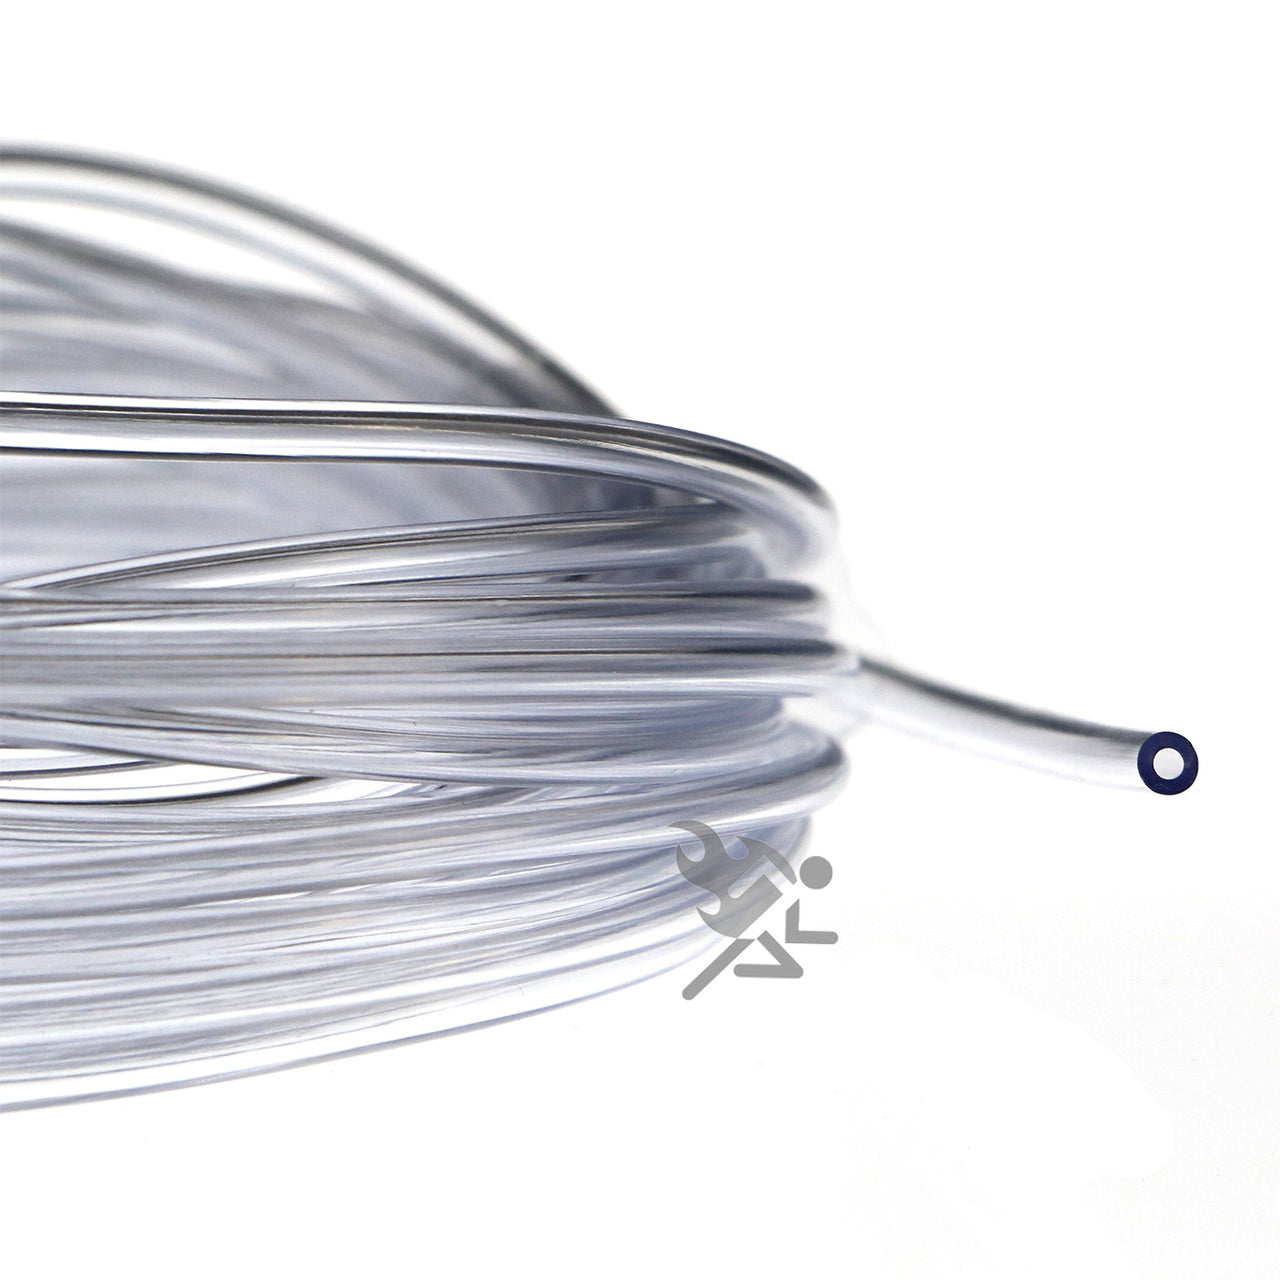 1/16 I.D. Clear Flexible Vinyl Tubing for Fish Hook Protectors – OnFireGuy